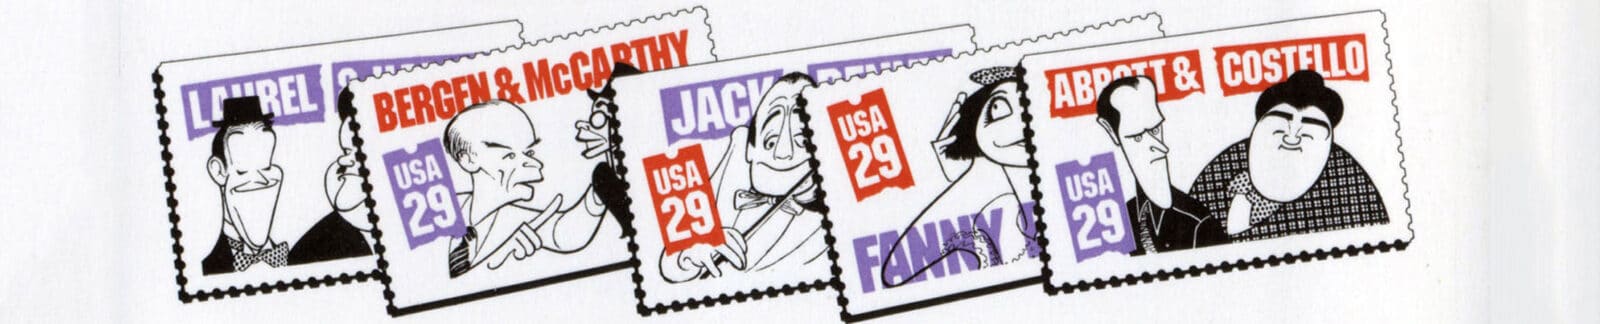 Abbott & Costello Postage Stamps - header